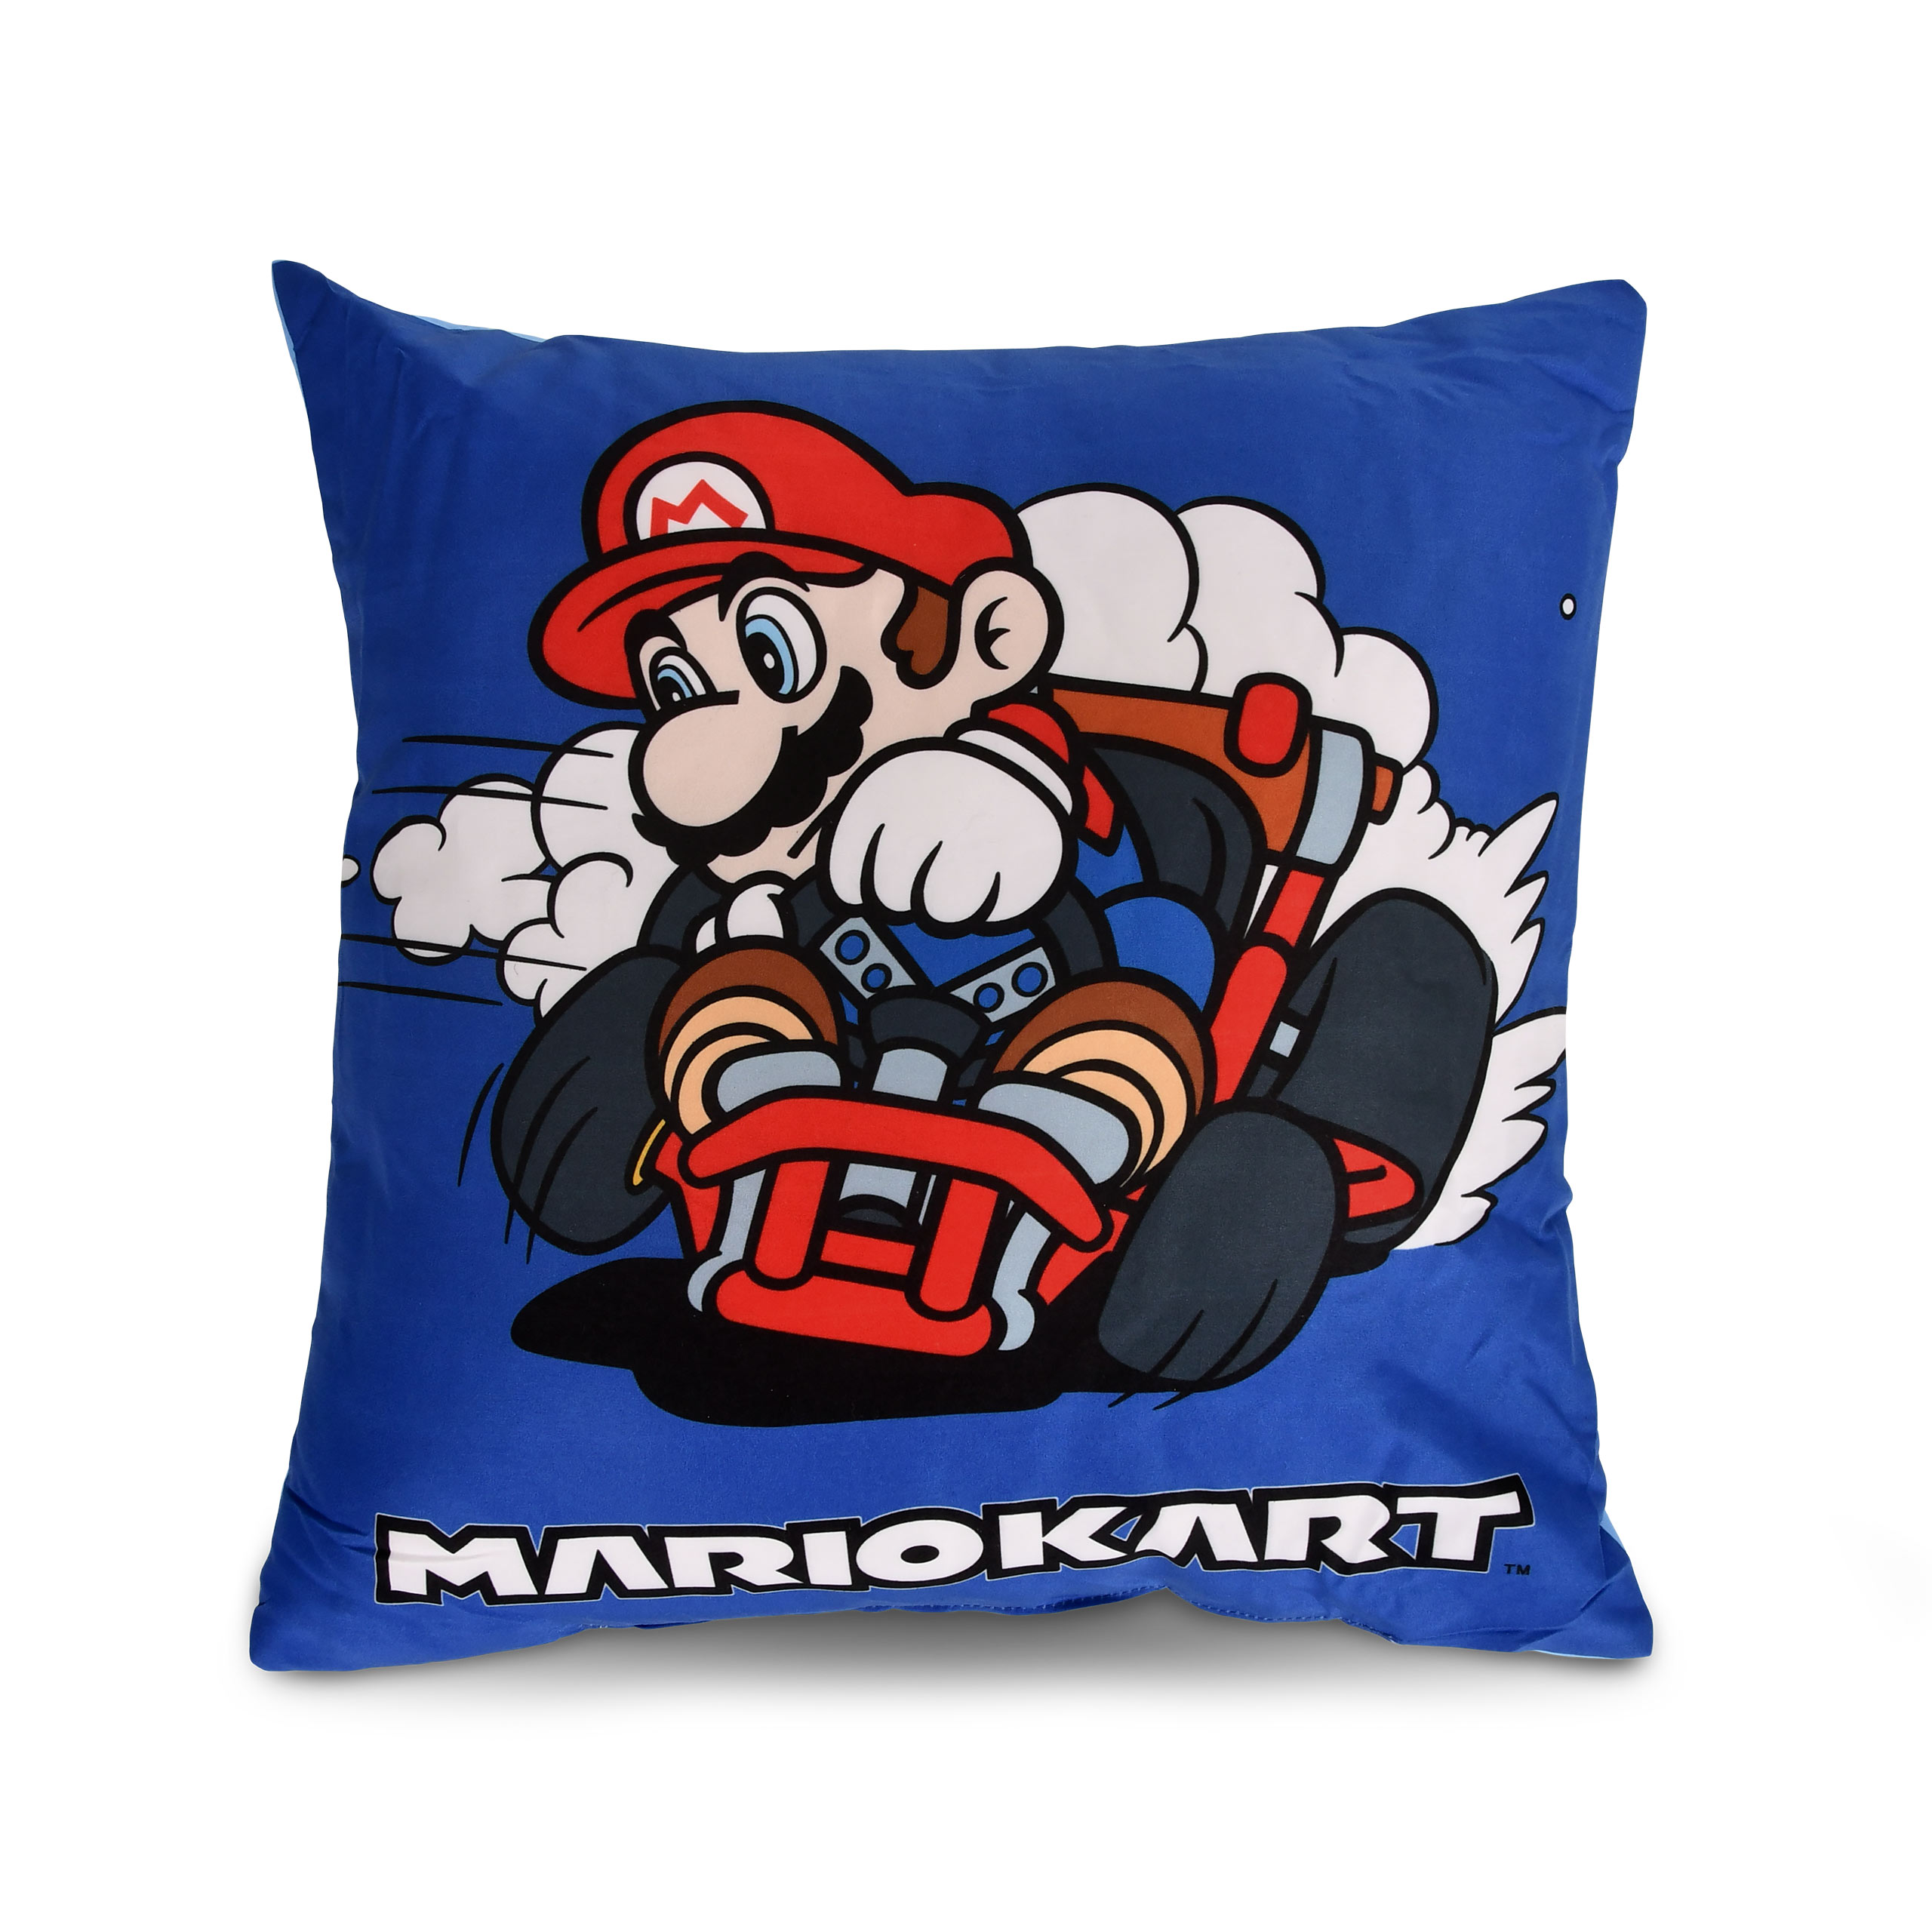 Super Mario - Mario Kart Pillow